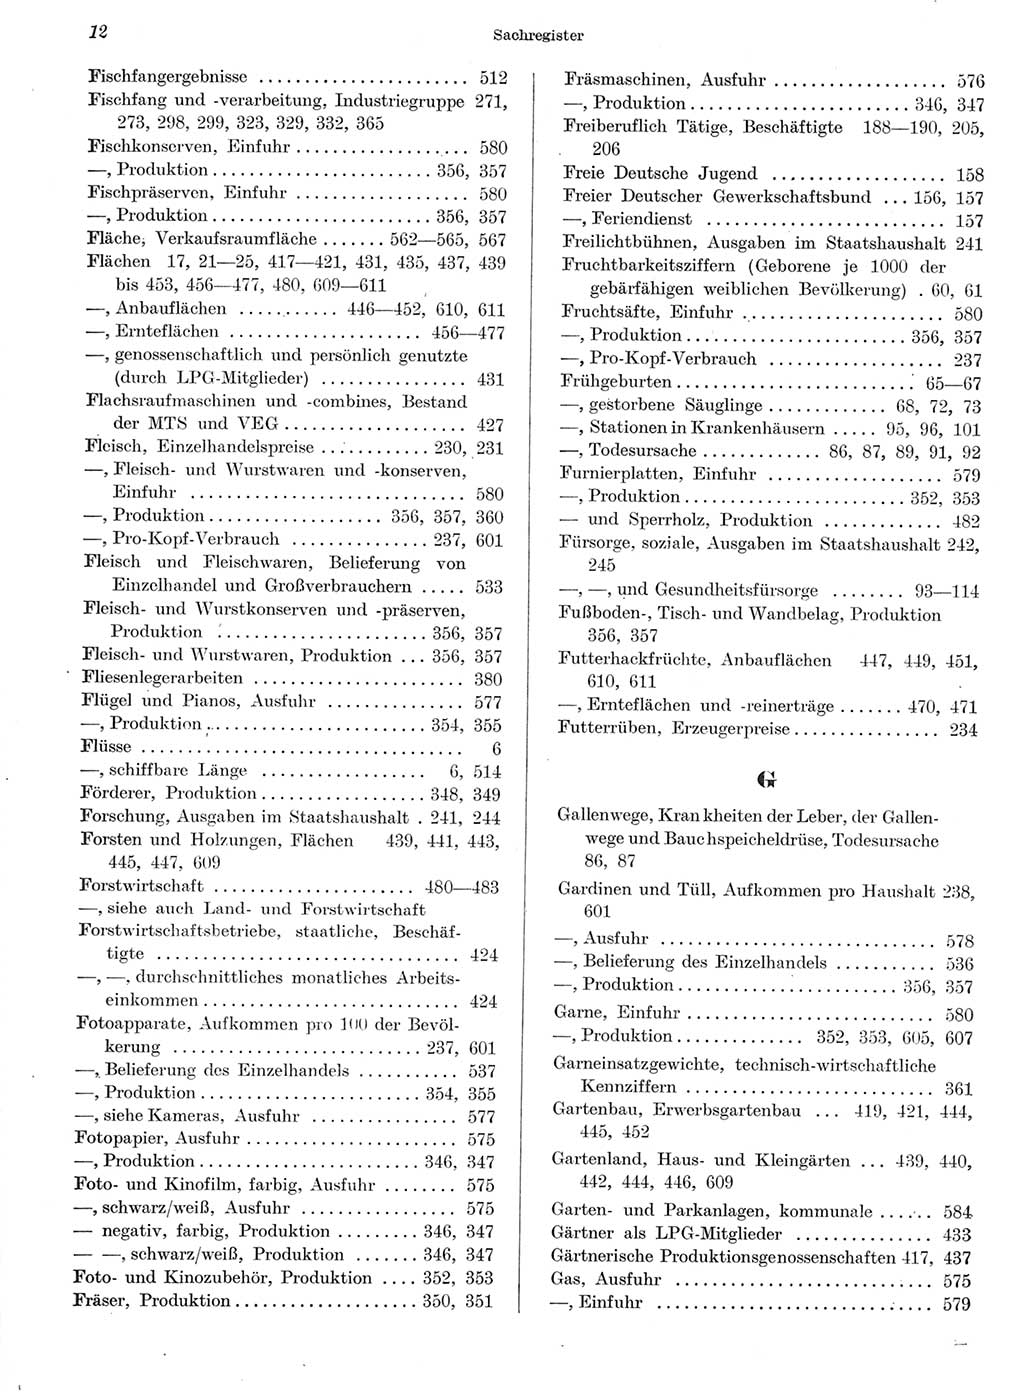 Statistisches Jahrbuch der Deutschen Demokratischen Republik (DDR) 1959, Seite 12 (Stat. Jb. DDR 1959, S. 12)